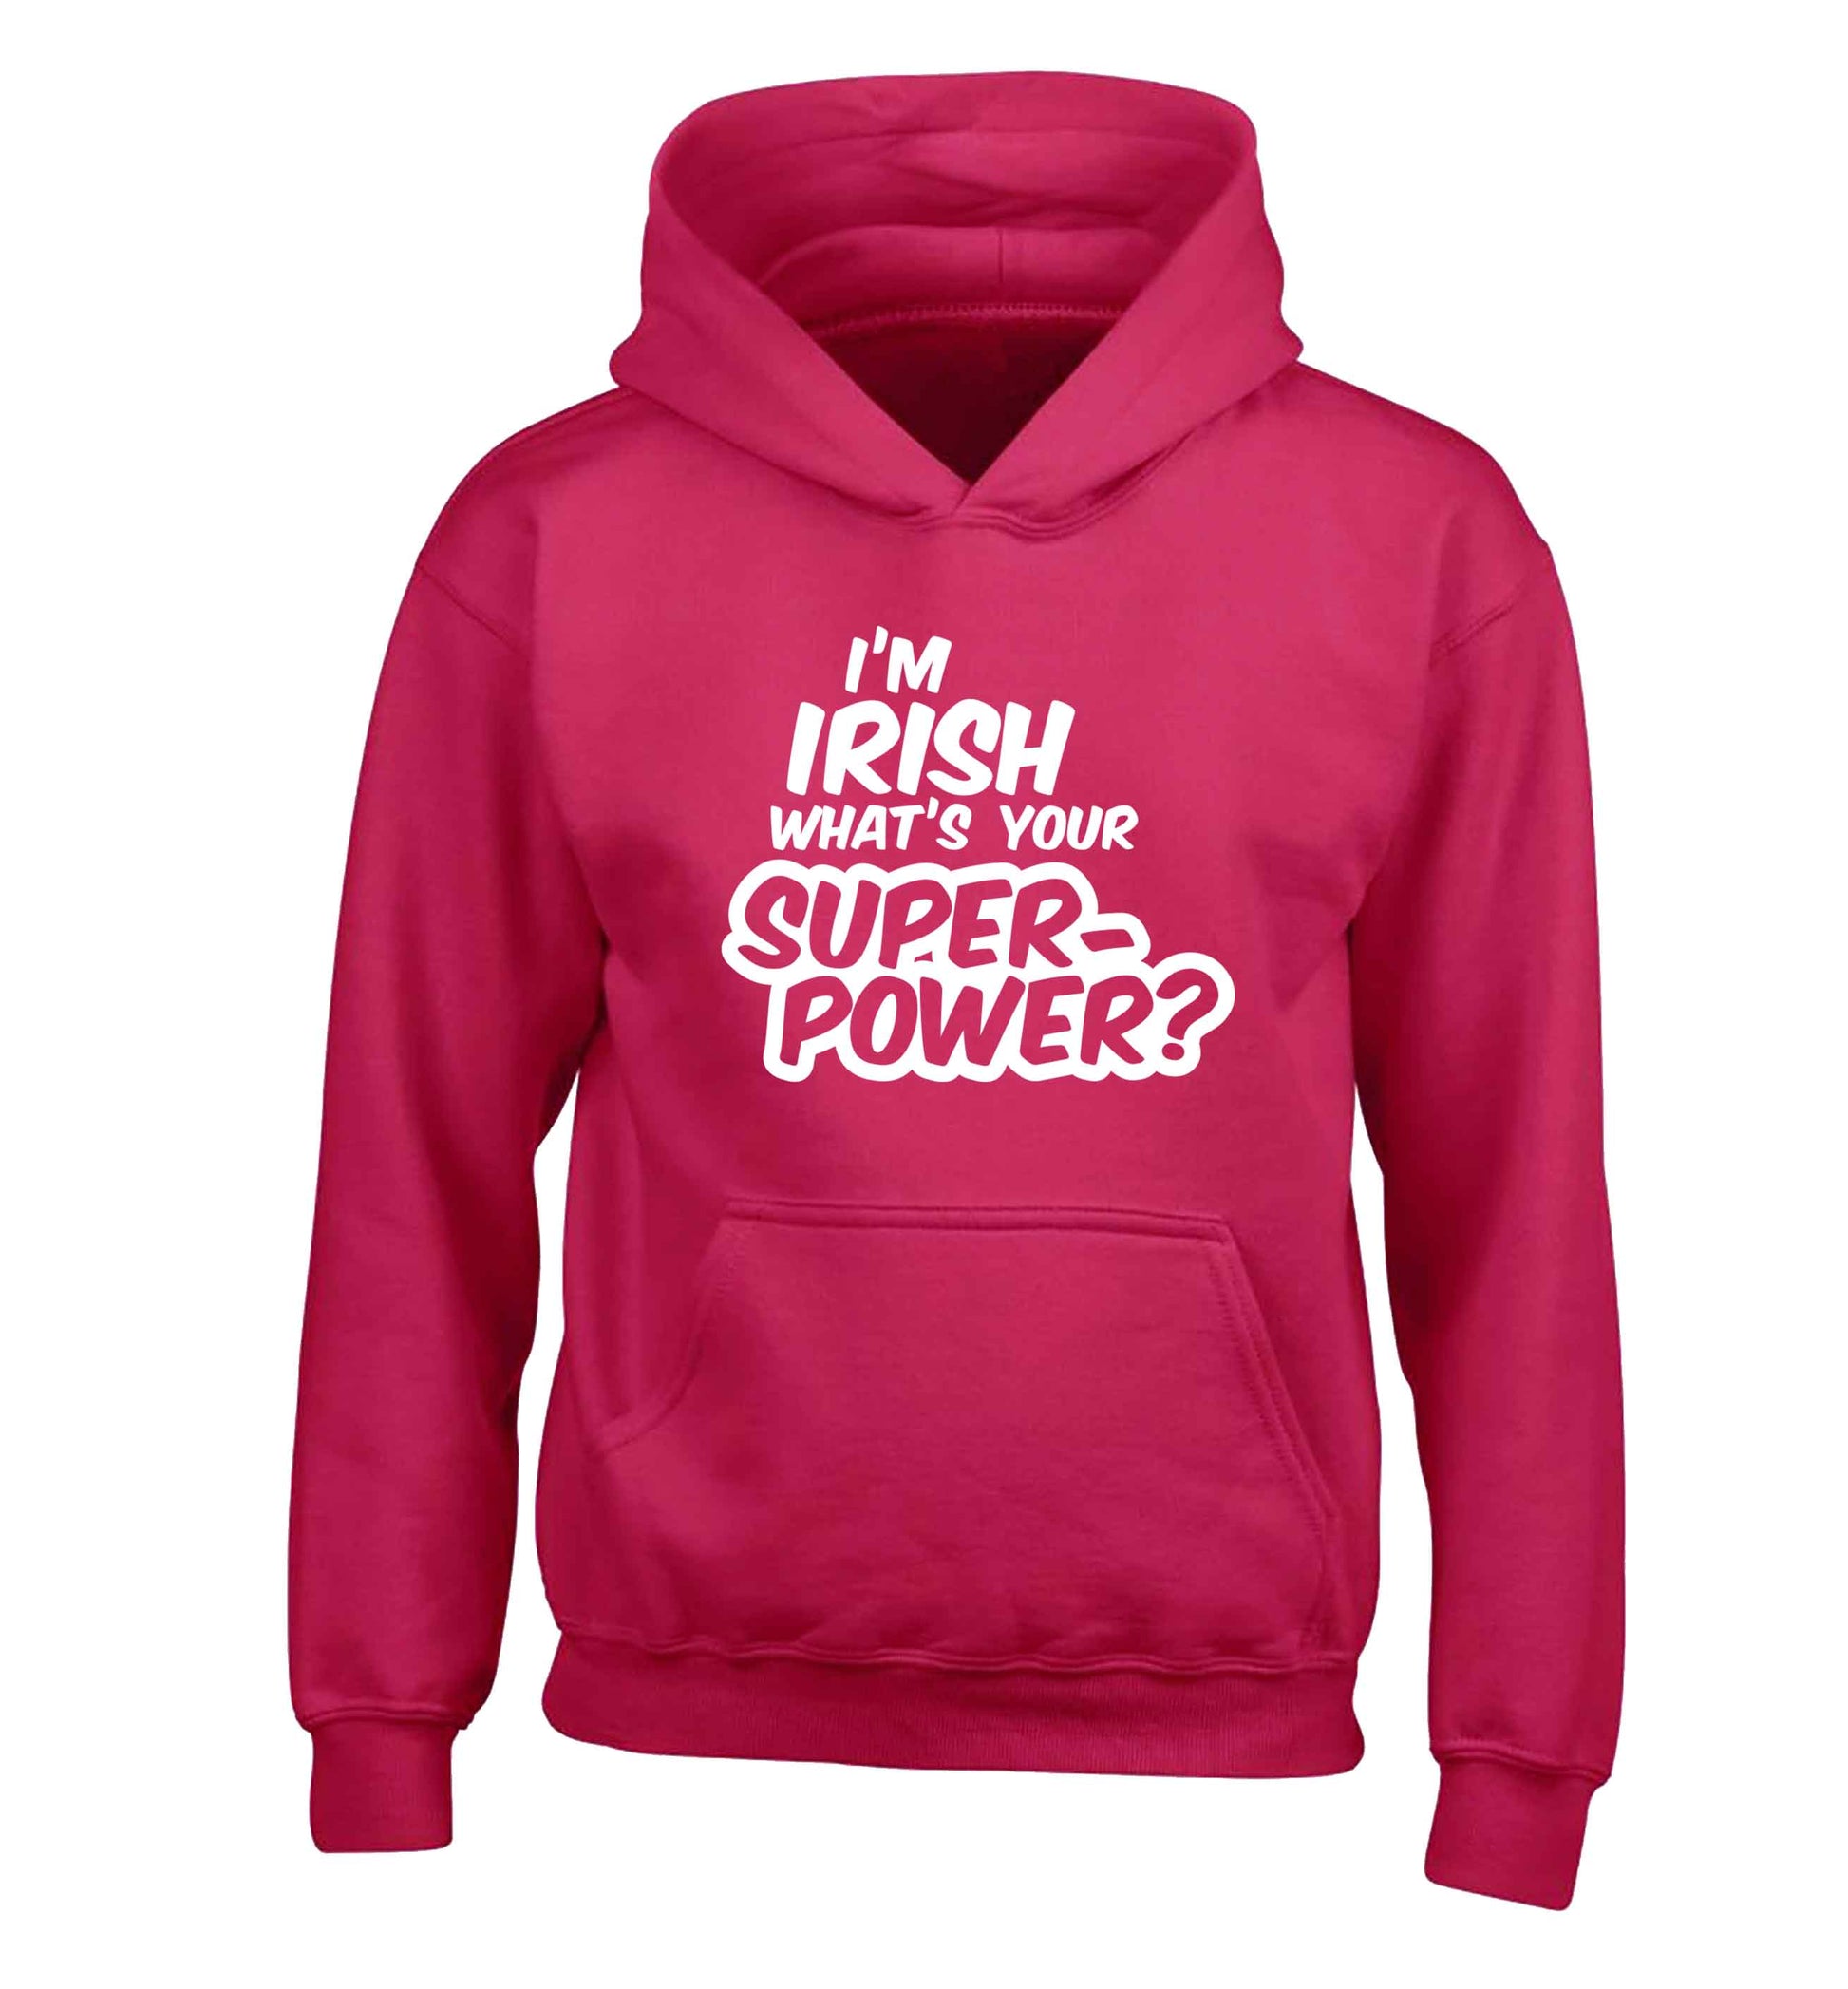 I'm Irish what's your superpower? children's pink hoodie 12-13 Years